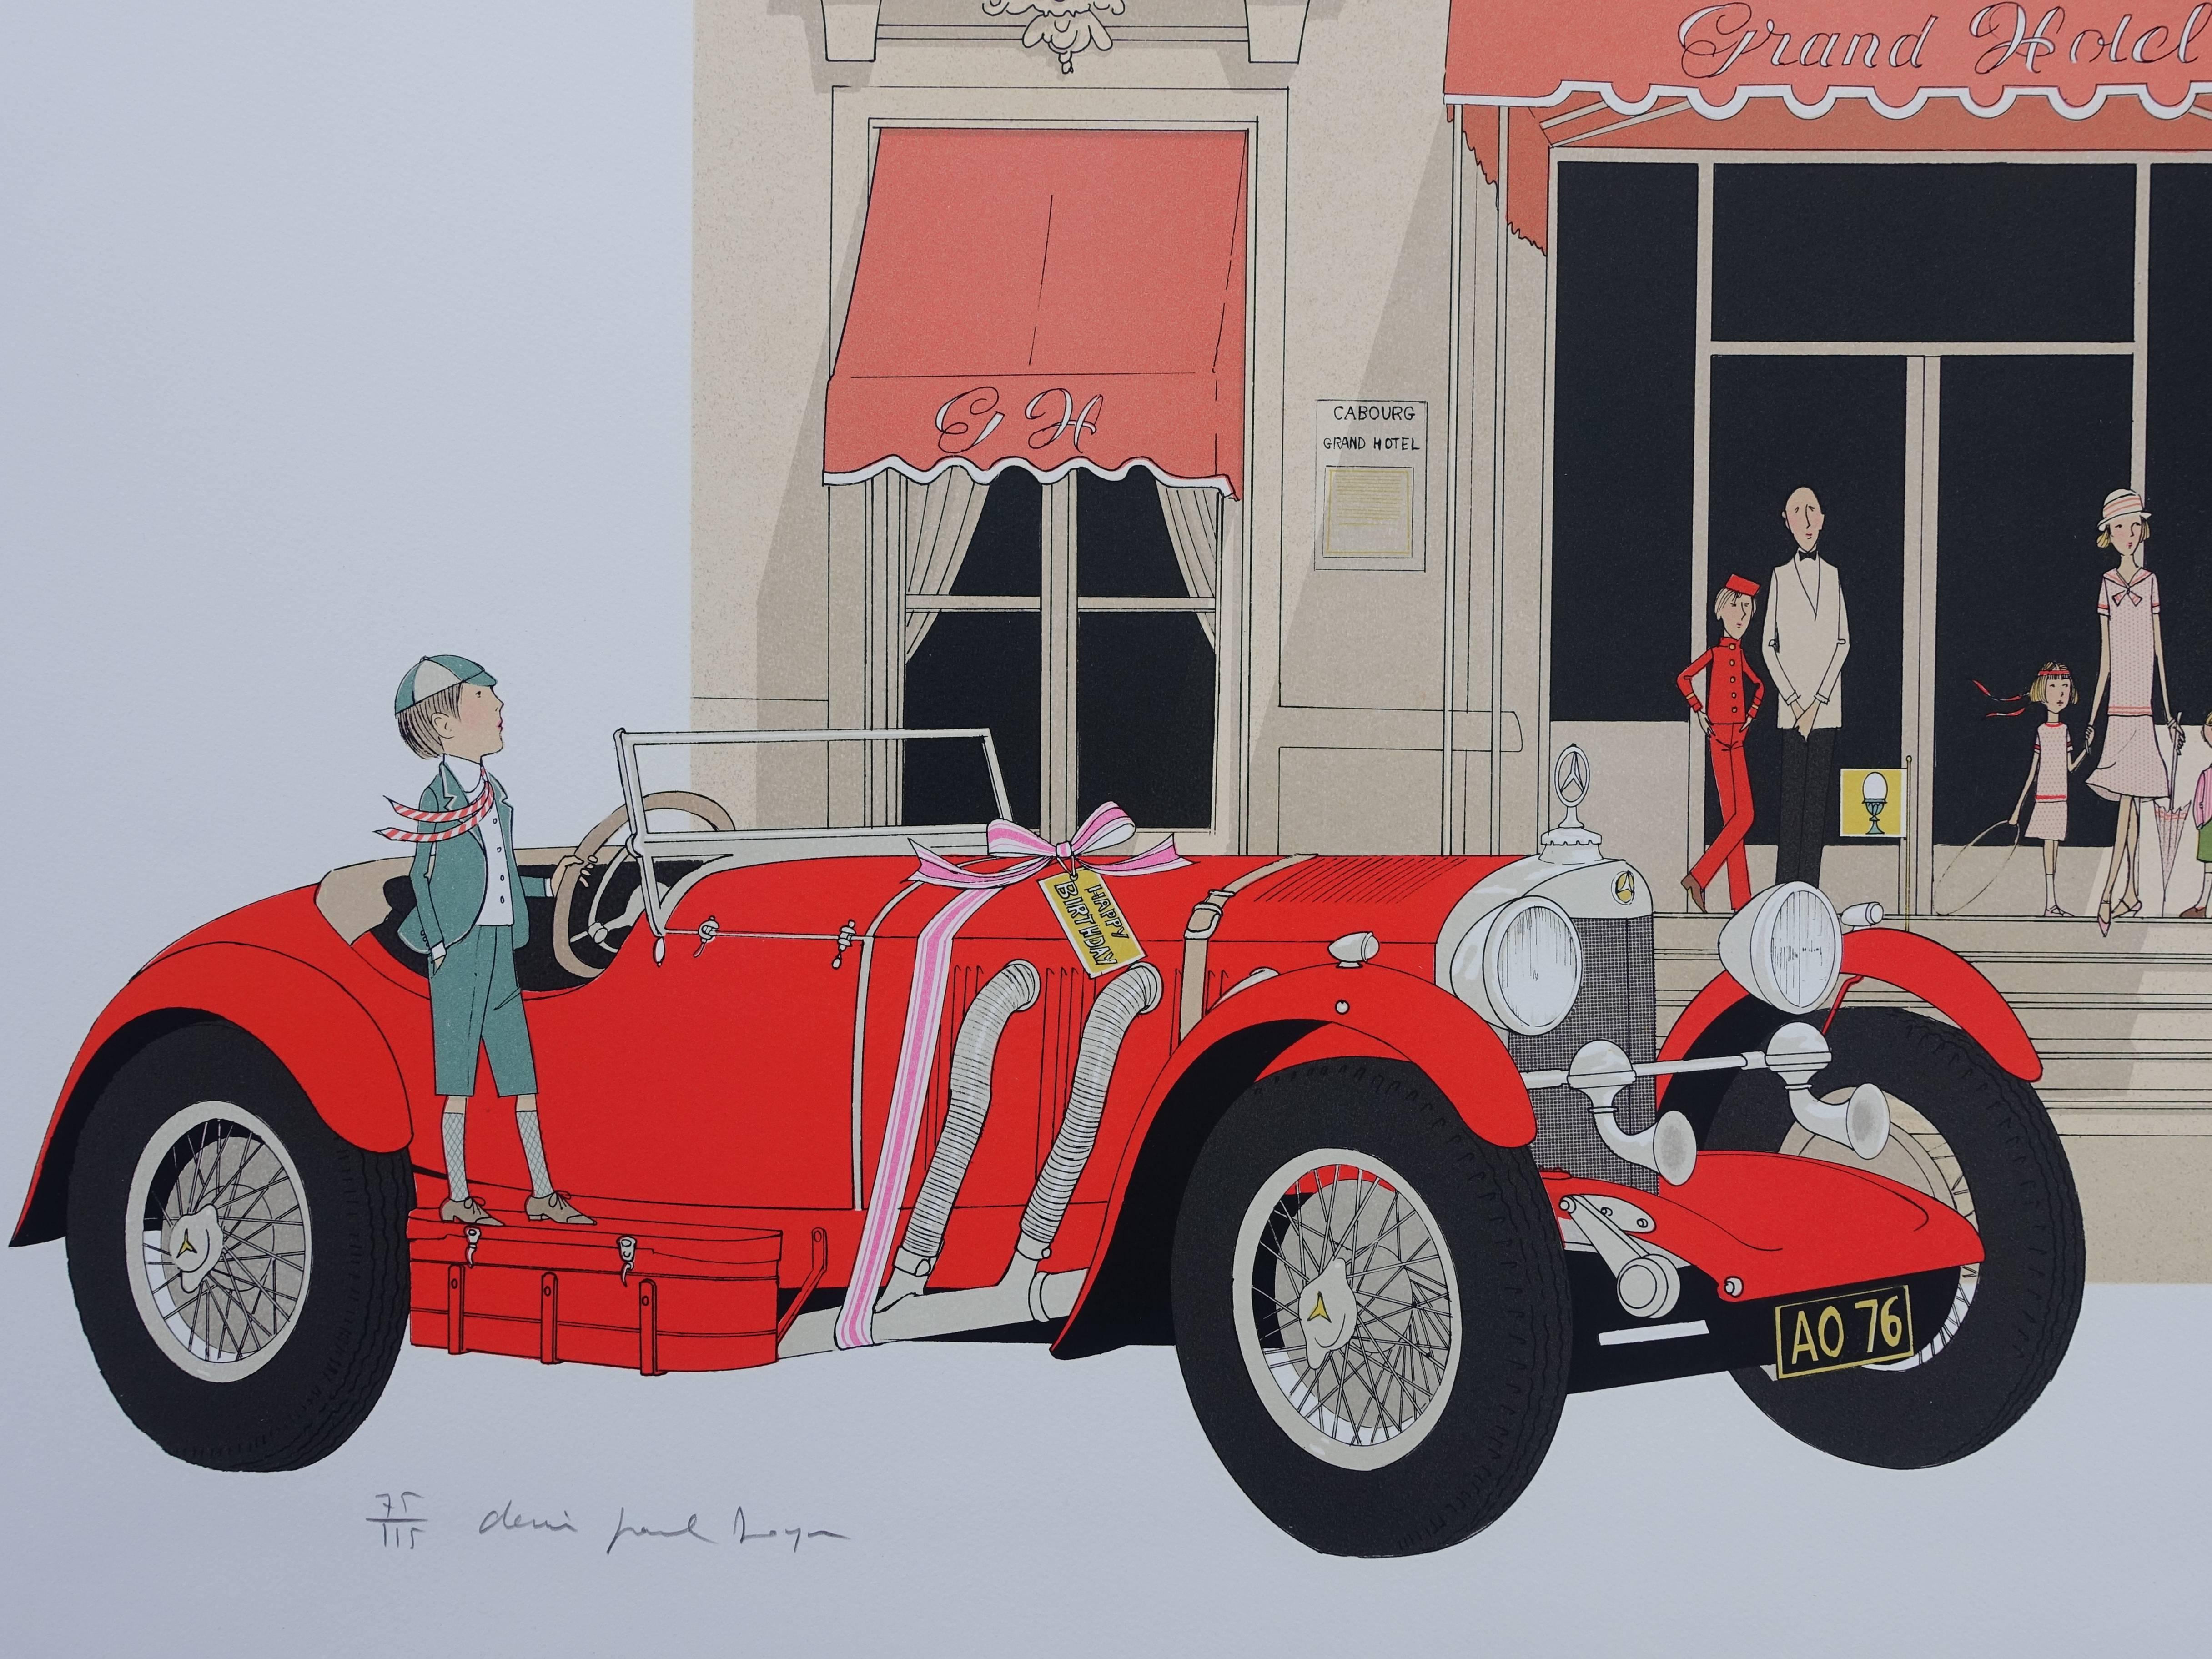 Mercedes 710 - Cabourg Grand Hotel - Original handsignierte Lithographie - 115ex (Grau), Landscape Print, von Denis Paul Noyer